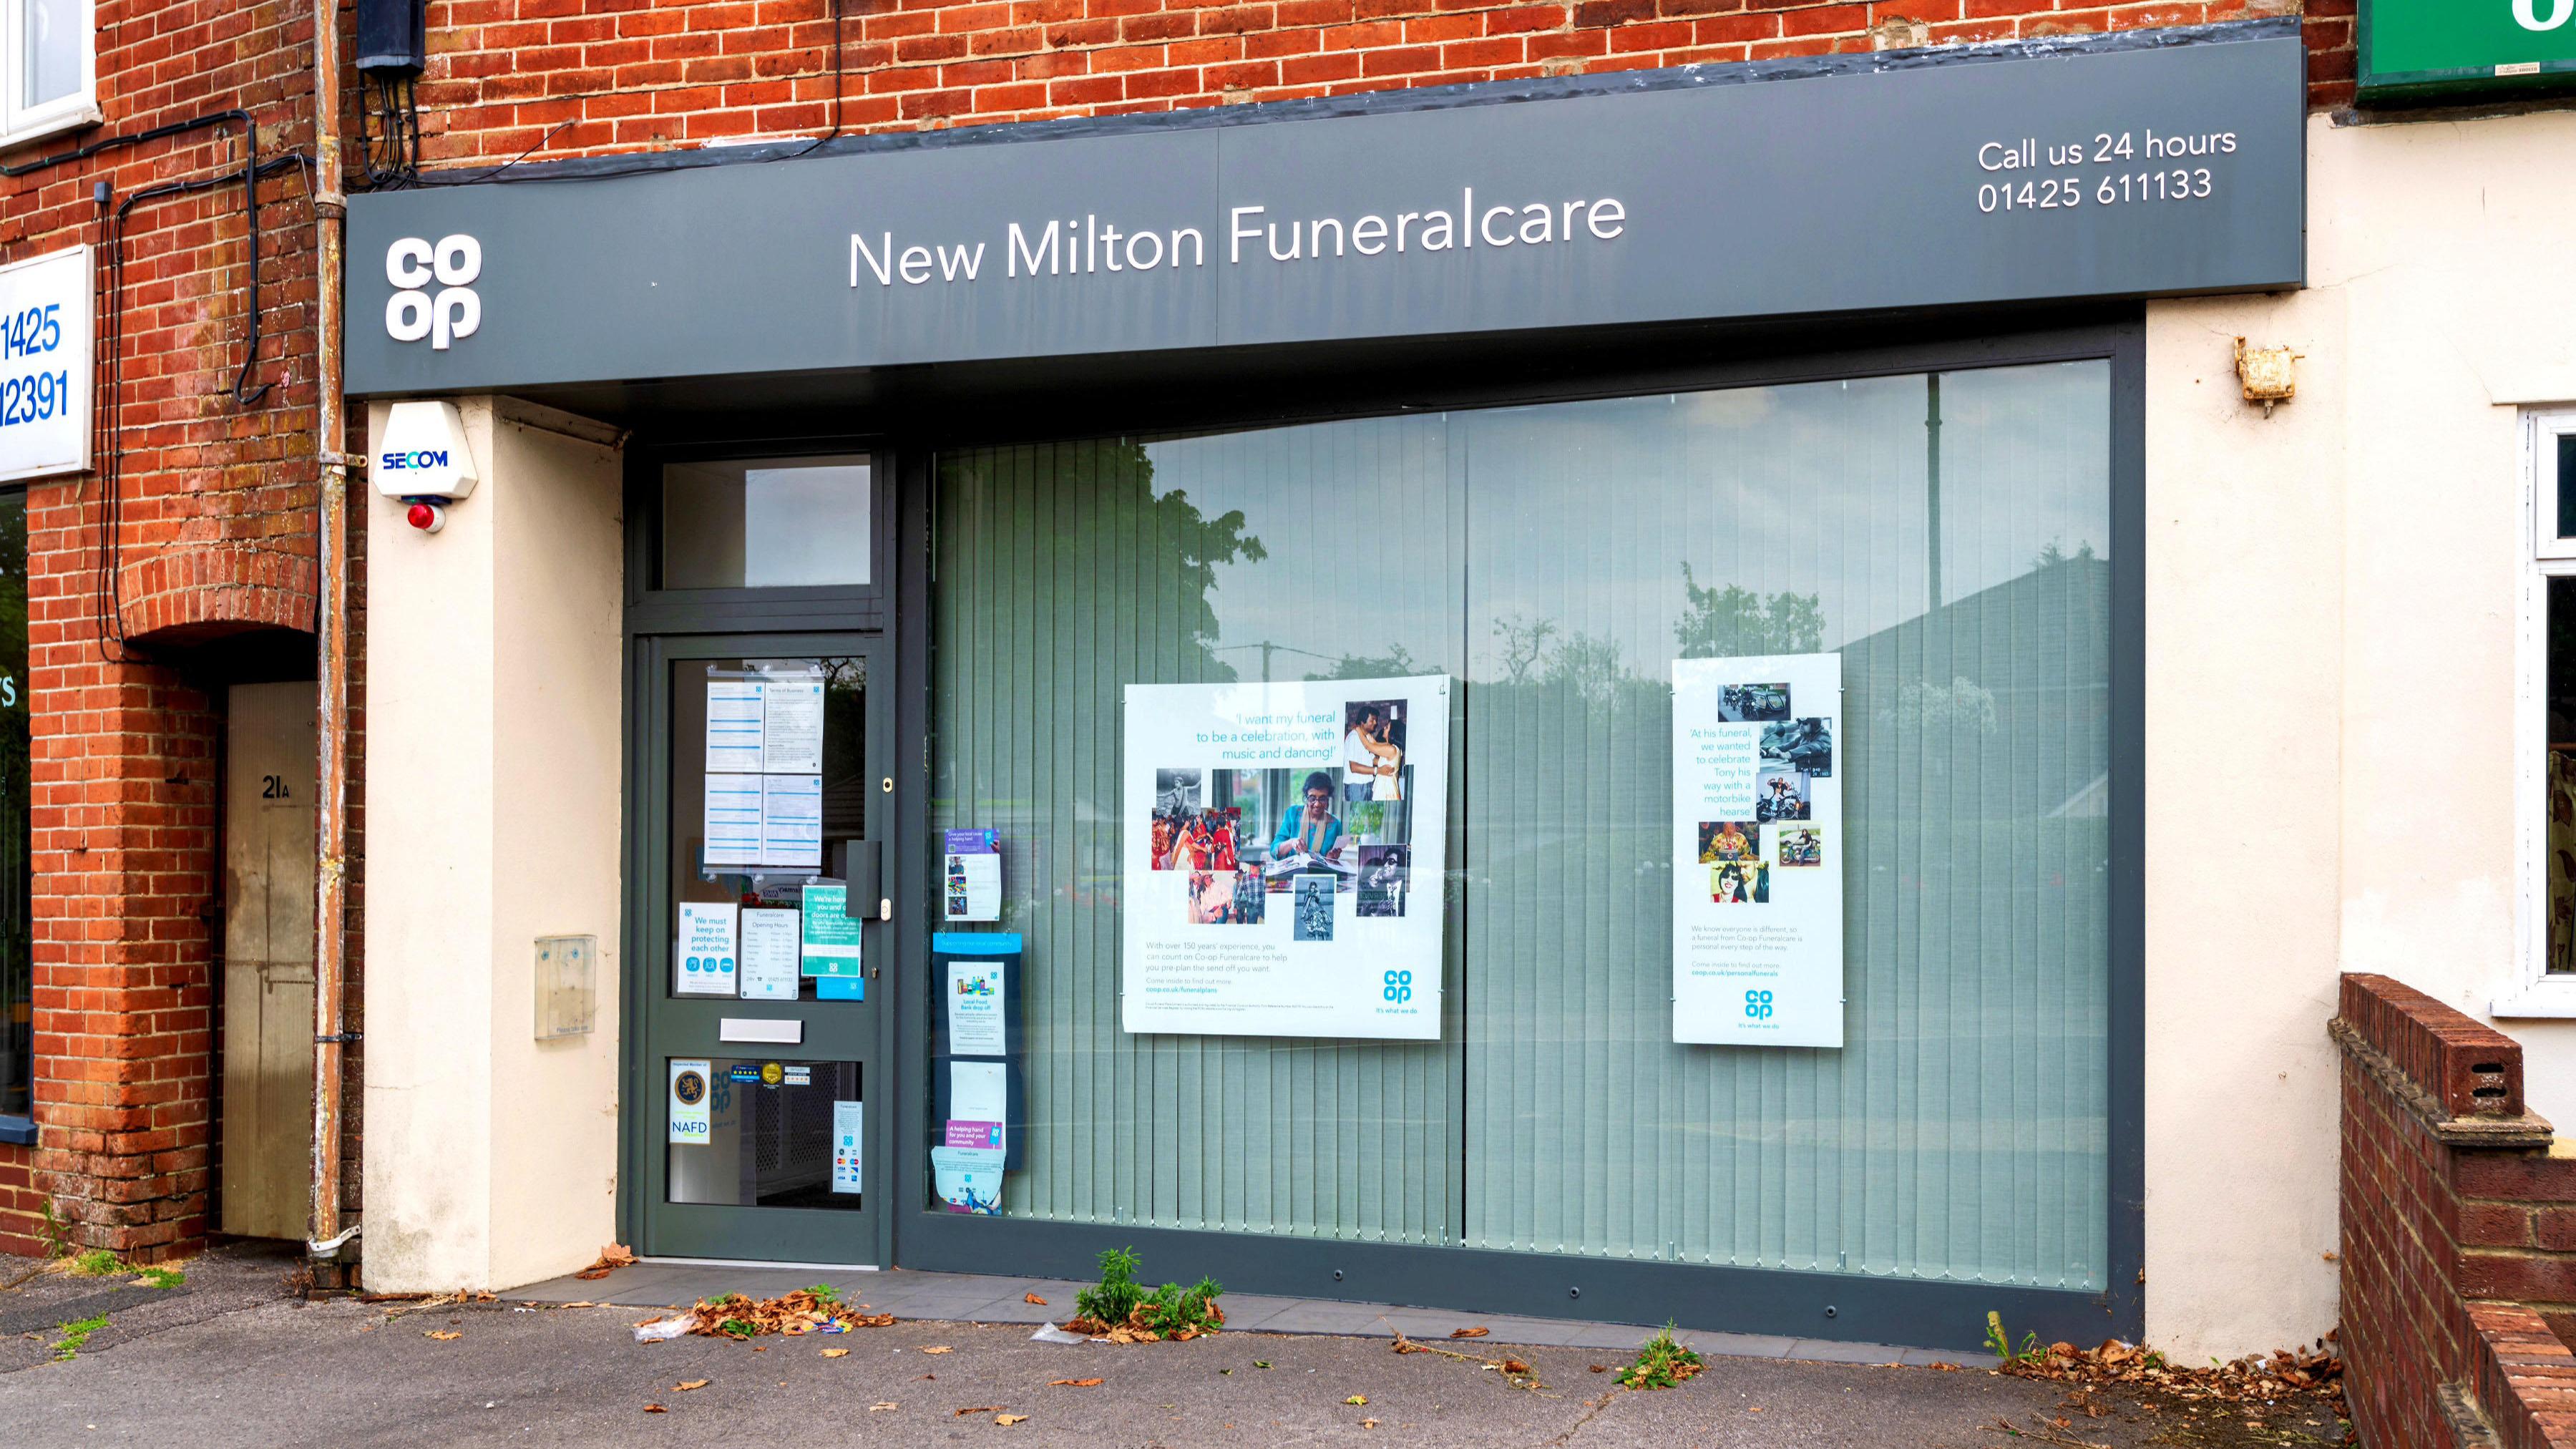 New Milton Funeralcare New Milton Funeralcare New Milton 01425 611133